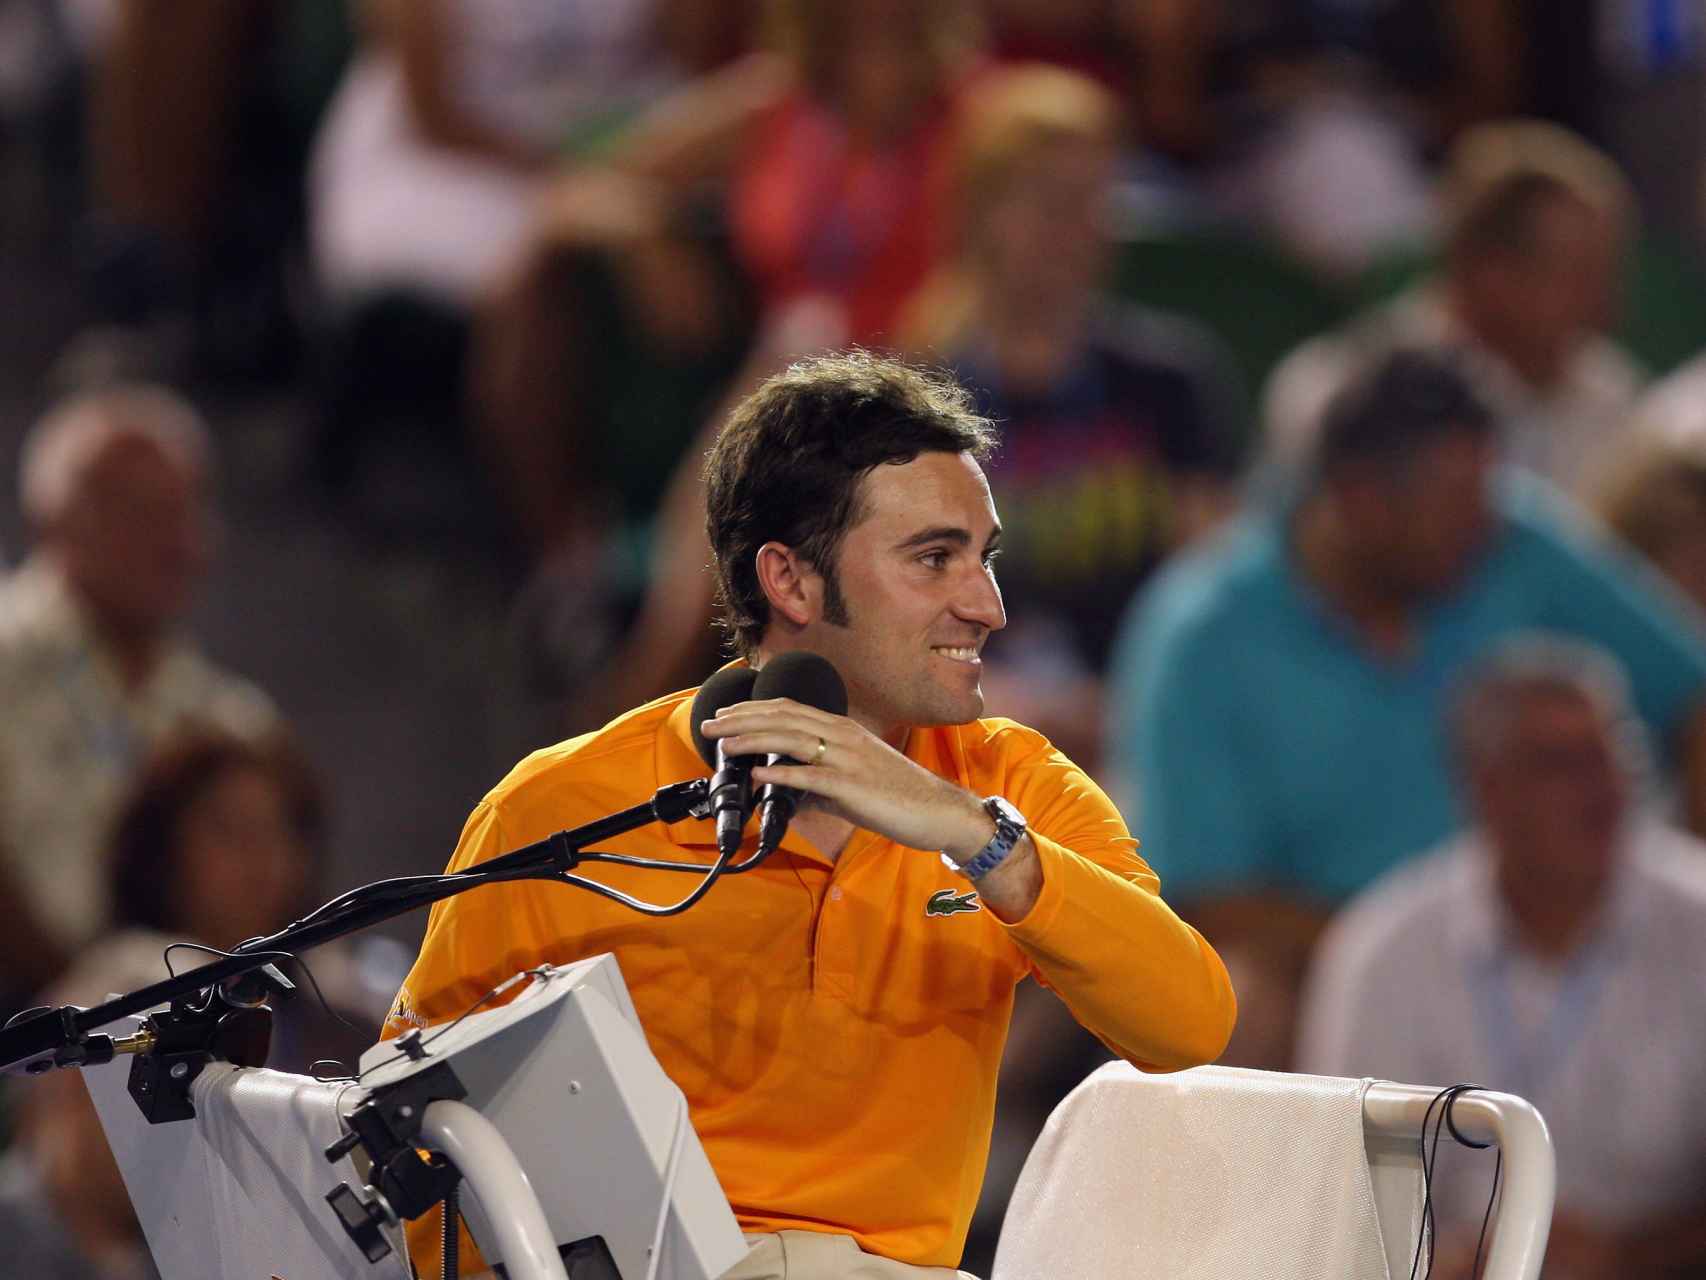 Enric Molina en la silla durante el Open de Australia de 2009.